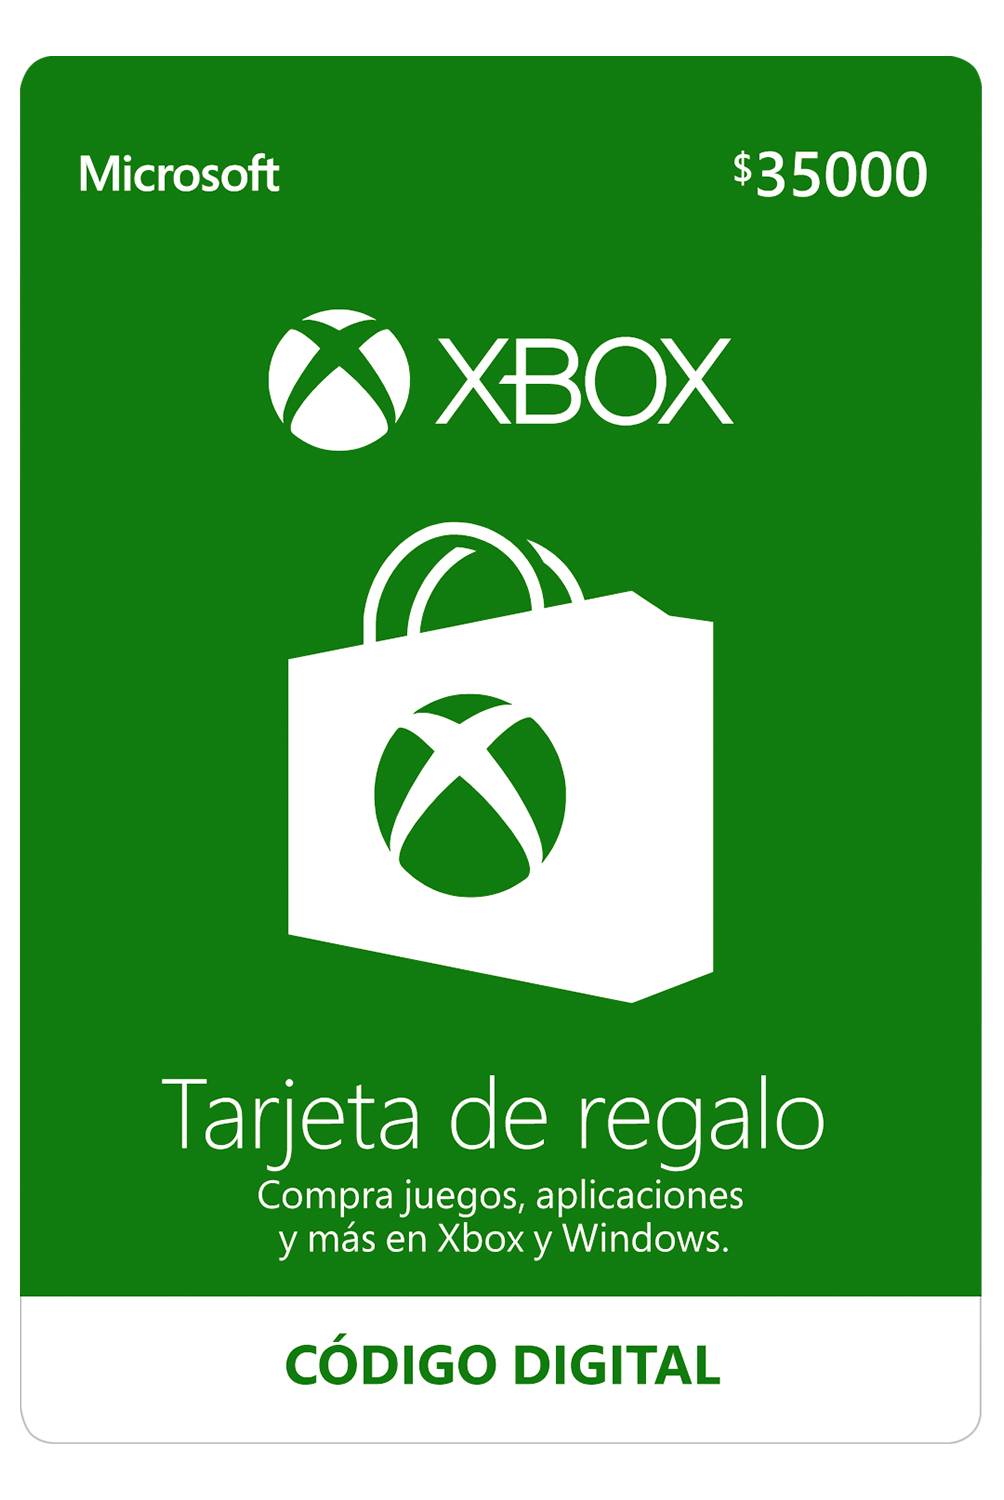 Microsoft - Tarjeta de Regalo Xbox 35.000: Código Digital